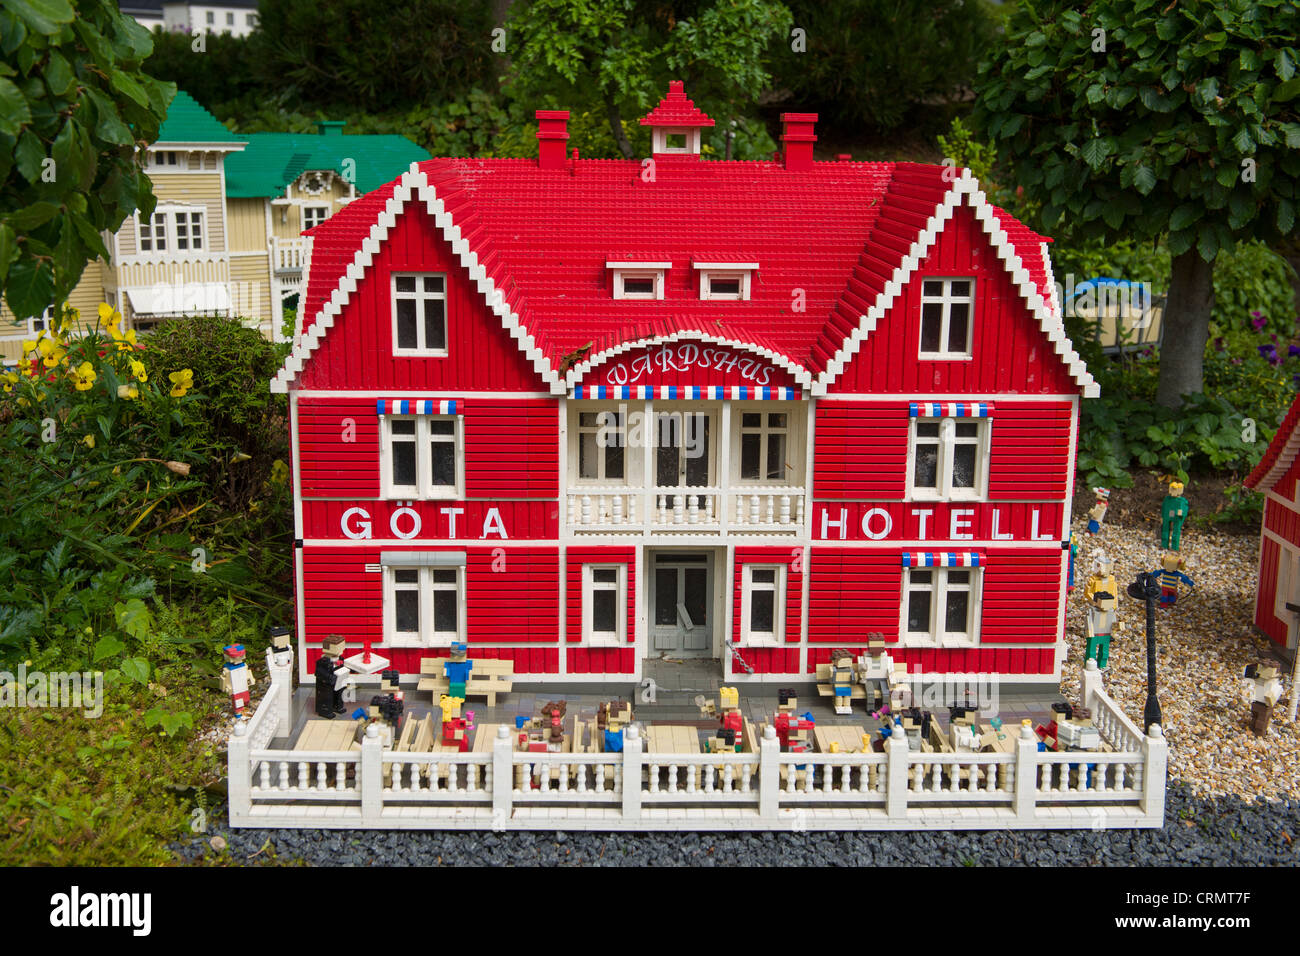 godtgørelse Eller Tragisk Lego hotel hi-res stock photography and images - Alamy